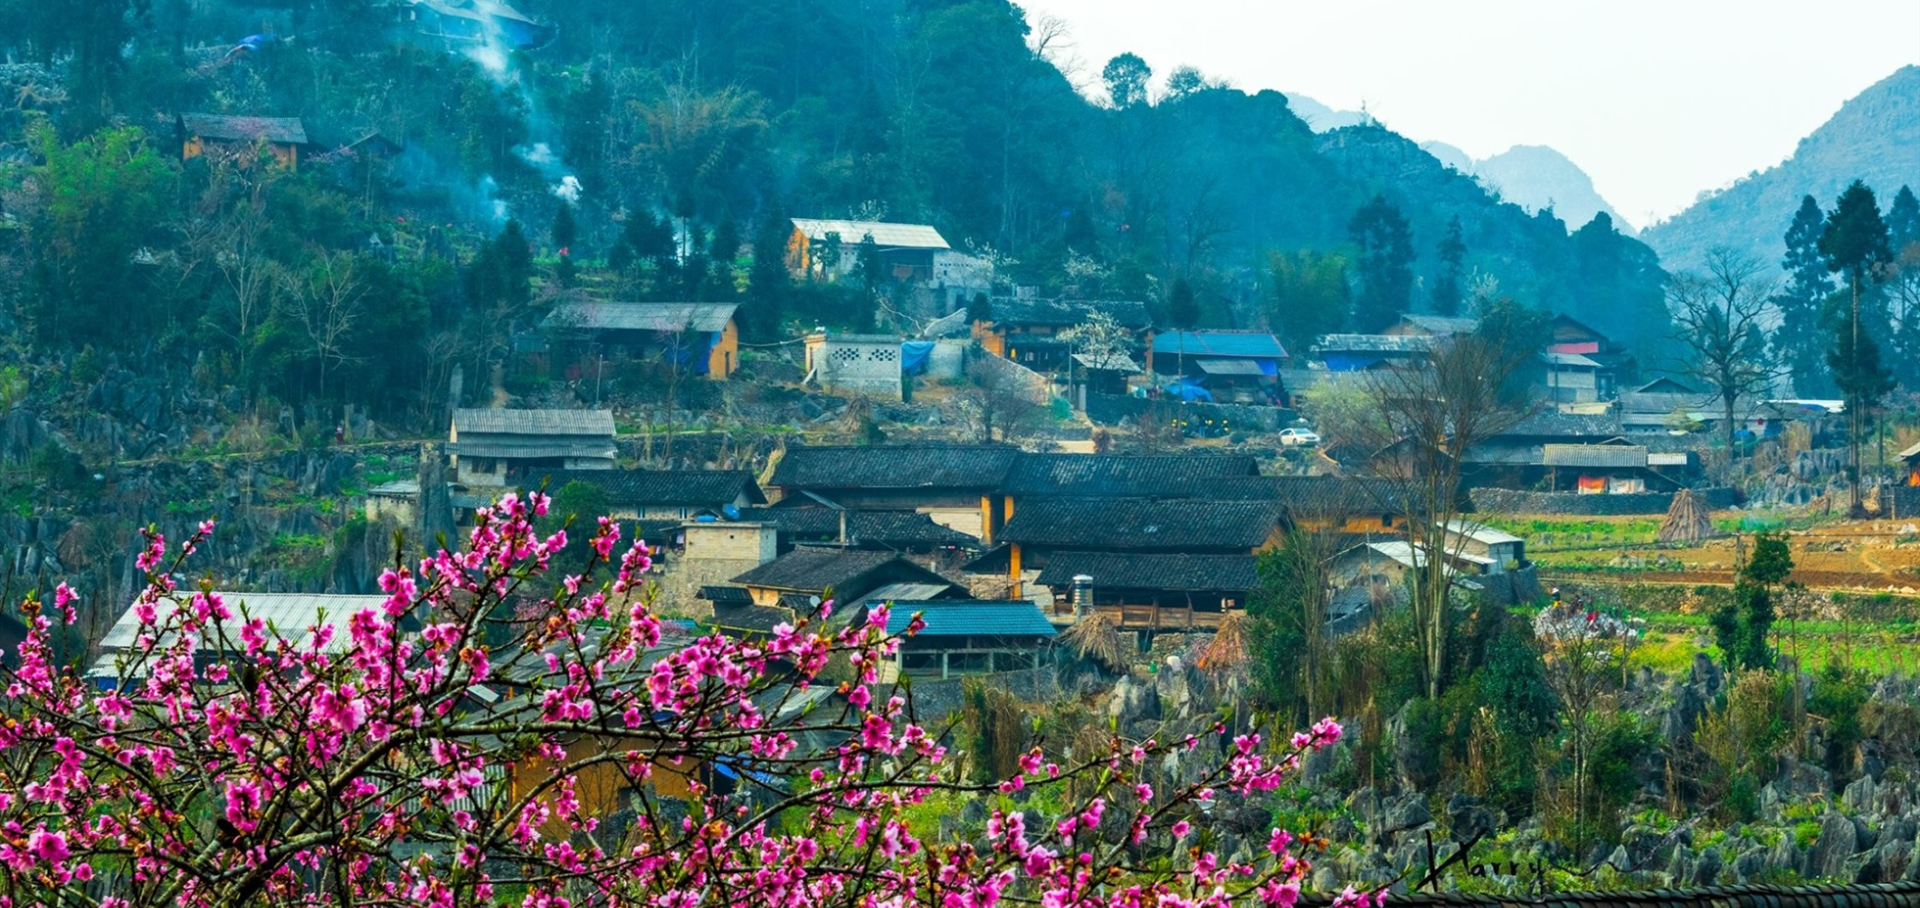 6 bản làng cổ đẹp như tranh vẽ ở Hà Giang